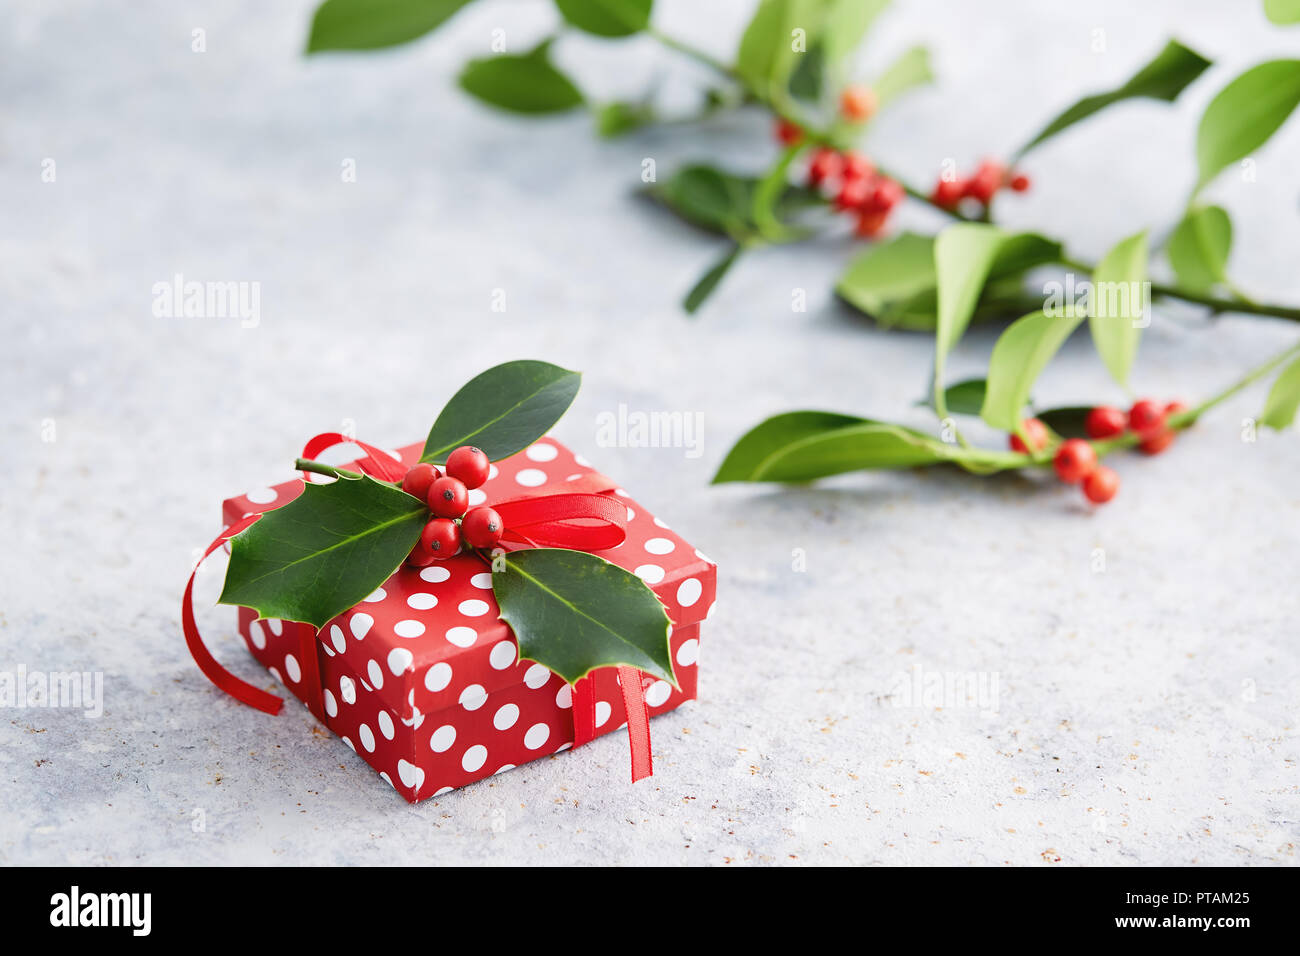 Weihnachtsgeschenk verpackt mit Polka Dot Papier und mit Stechpalme Beeren dekoriert. Geschenk verpackt in Polka Dot Papier mit dekorativen roten Band. Stockfoto